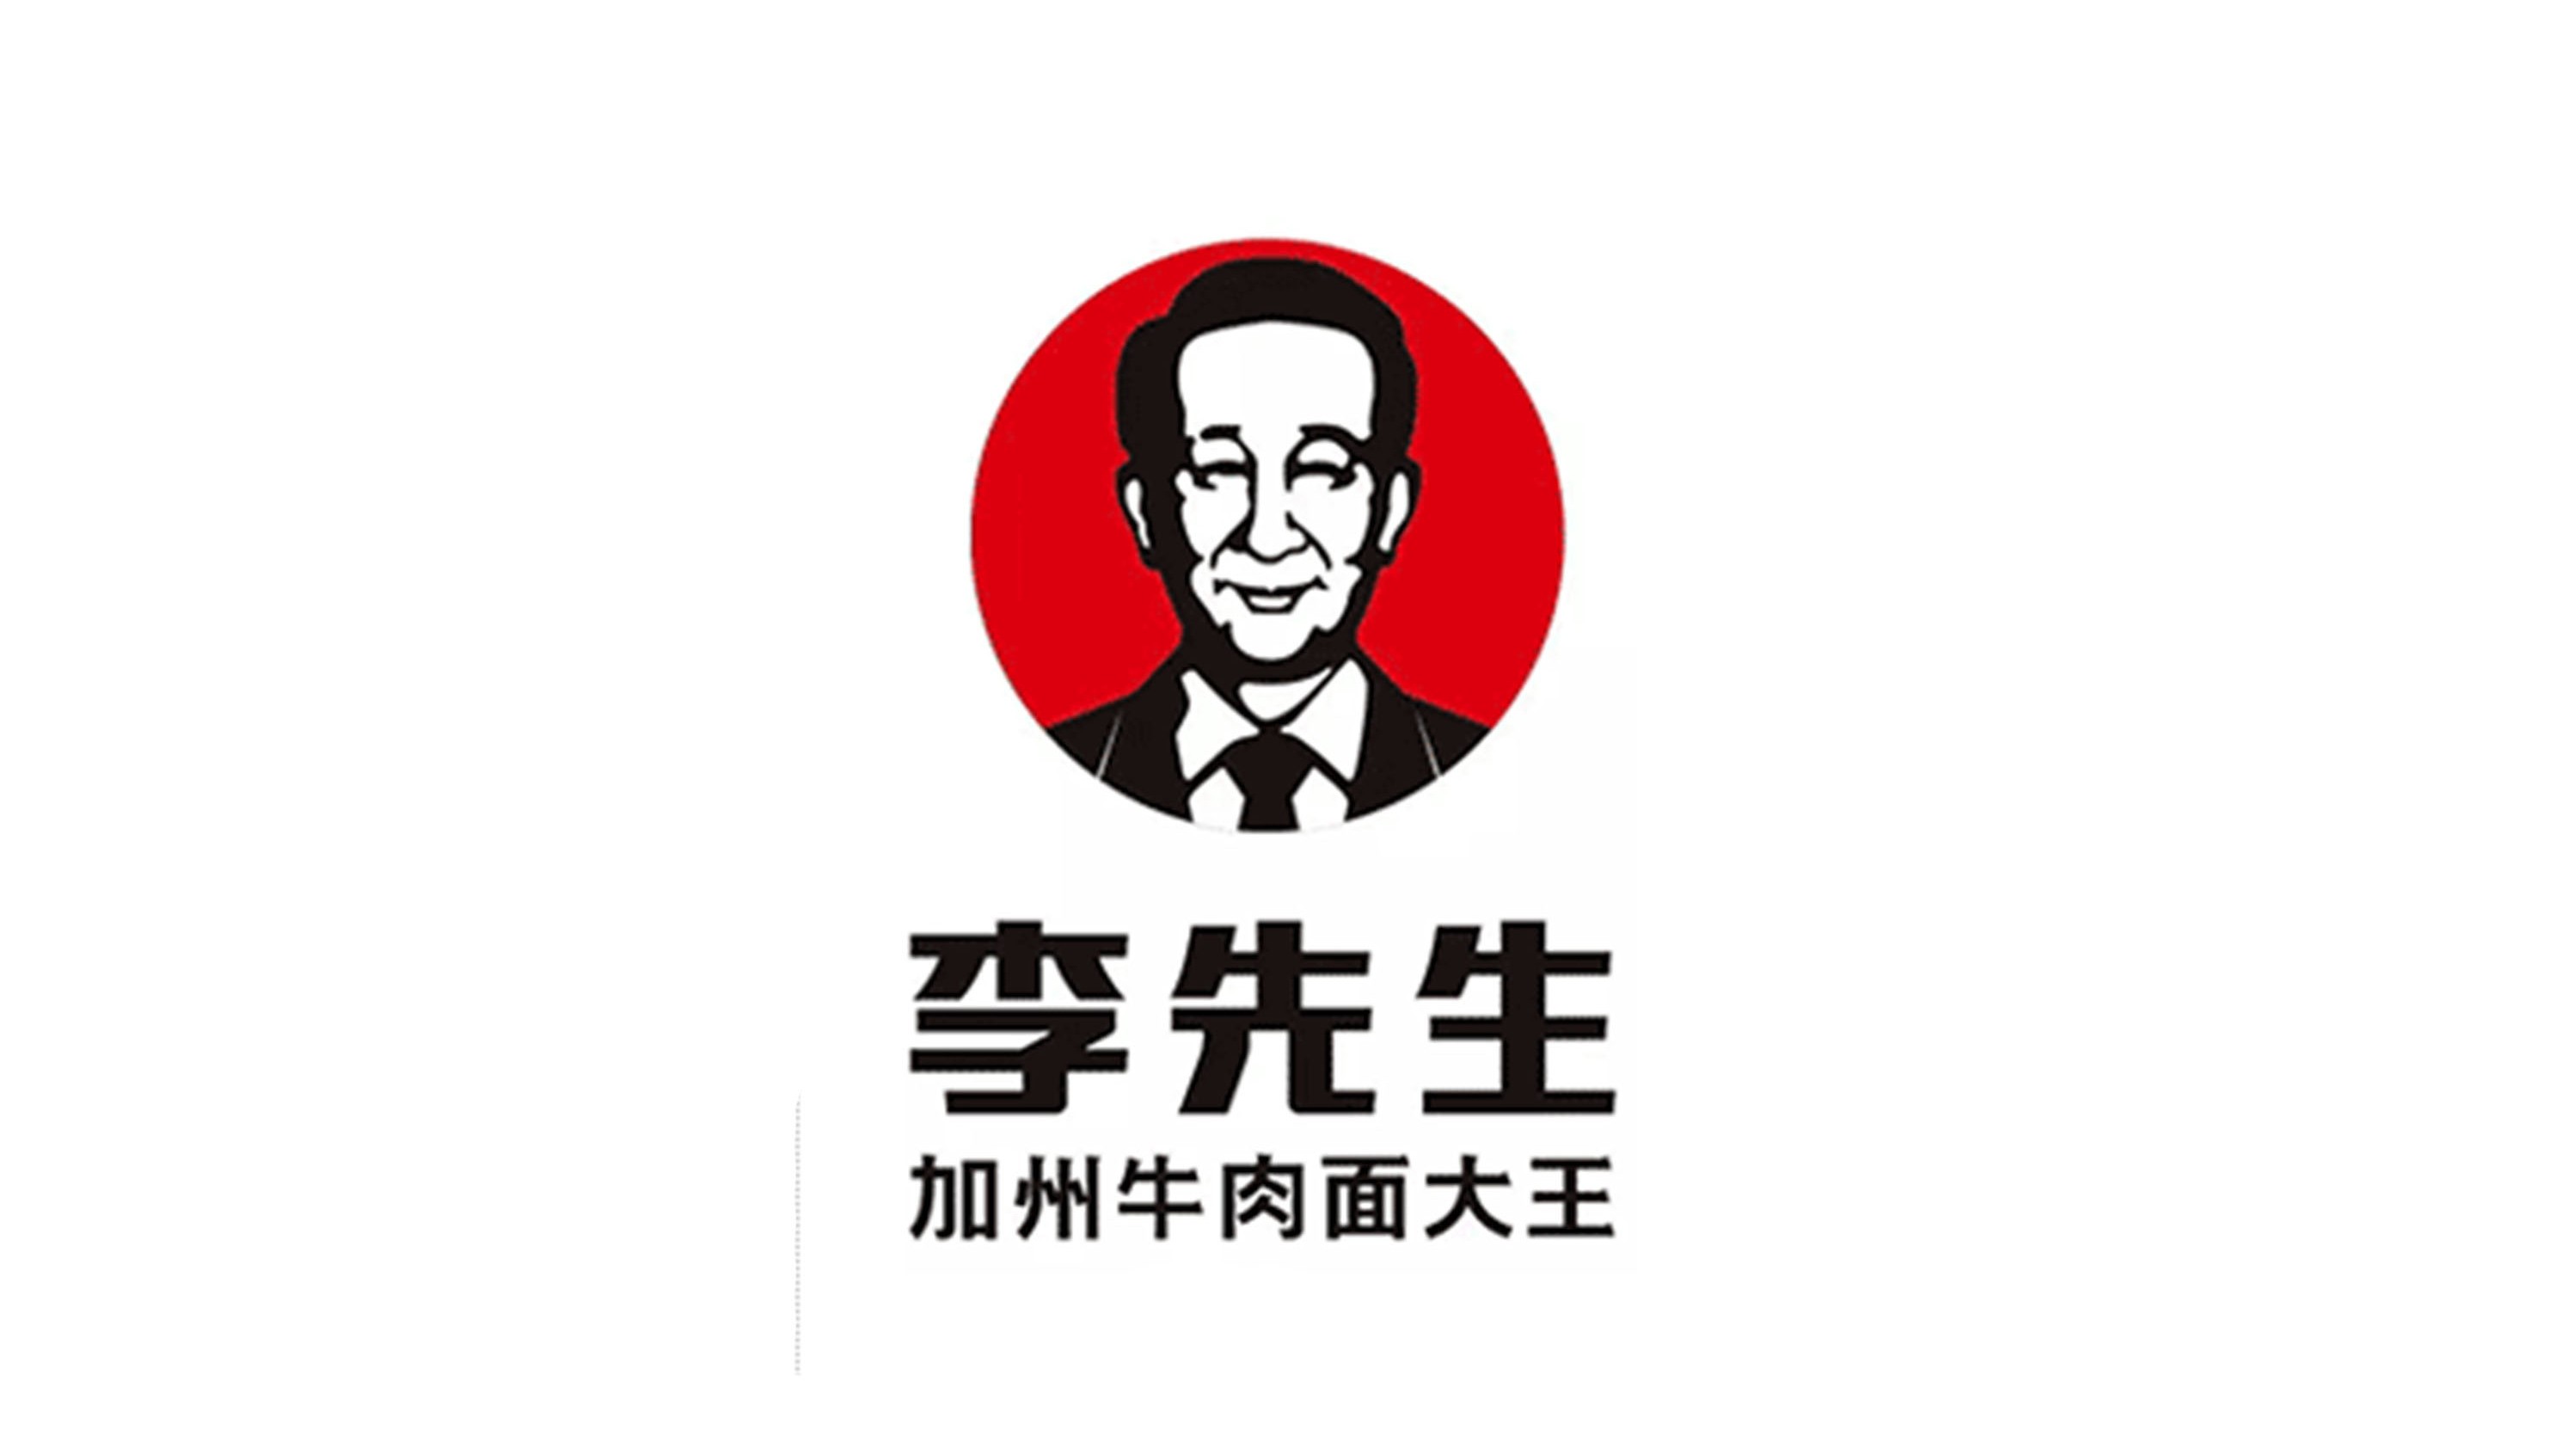 李先生logo图片含义/演变/变迁及品牌介绍 - logo设计